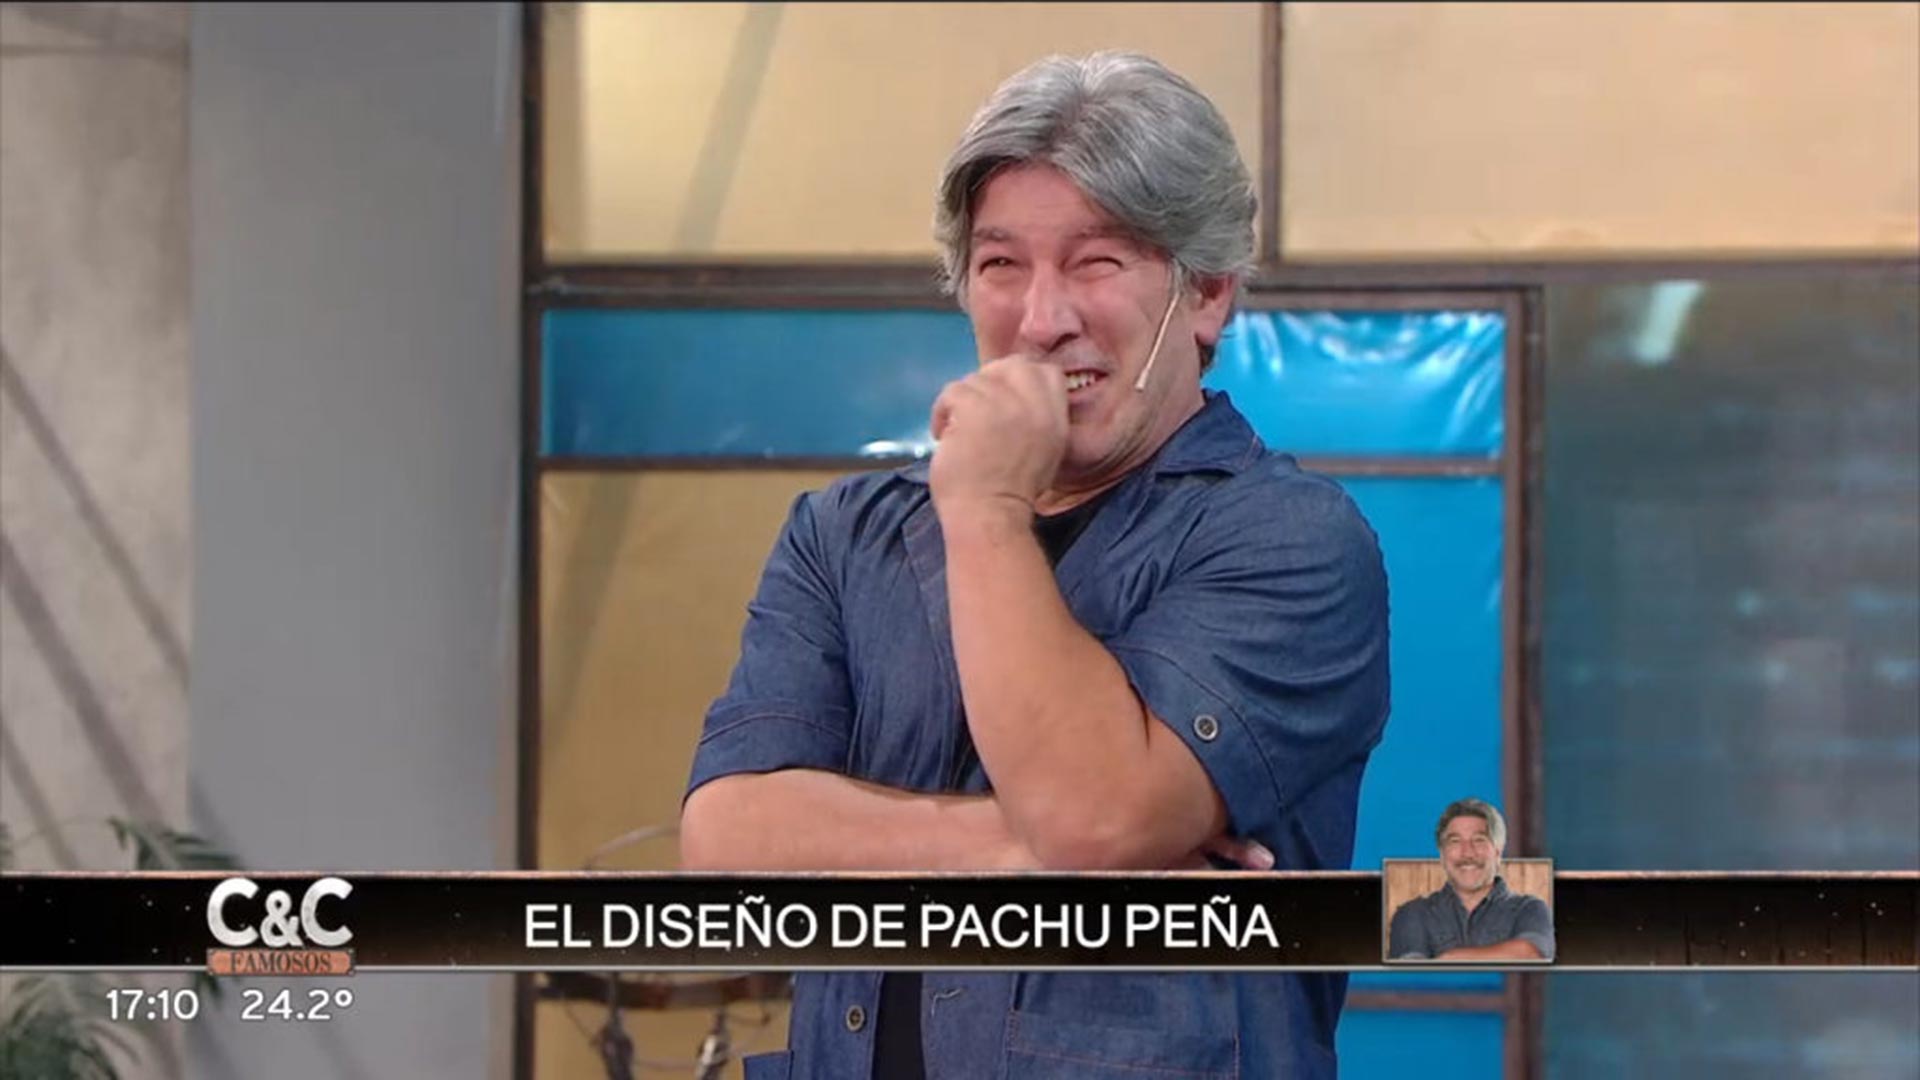 Pachu Peña no pudo contener la risa al presentar un extraño diseño del Guasón en Corte & Confección famosos: “Es lo que hay”